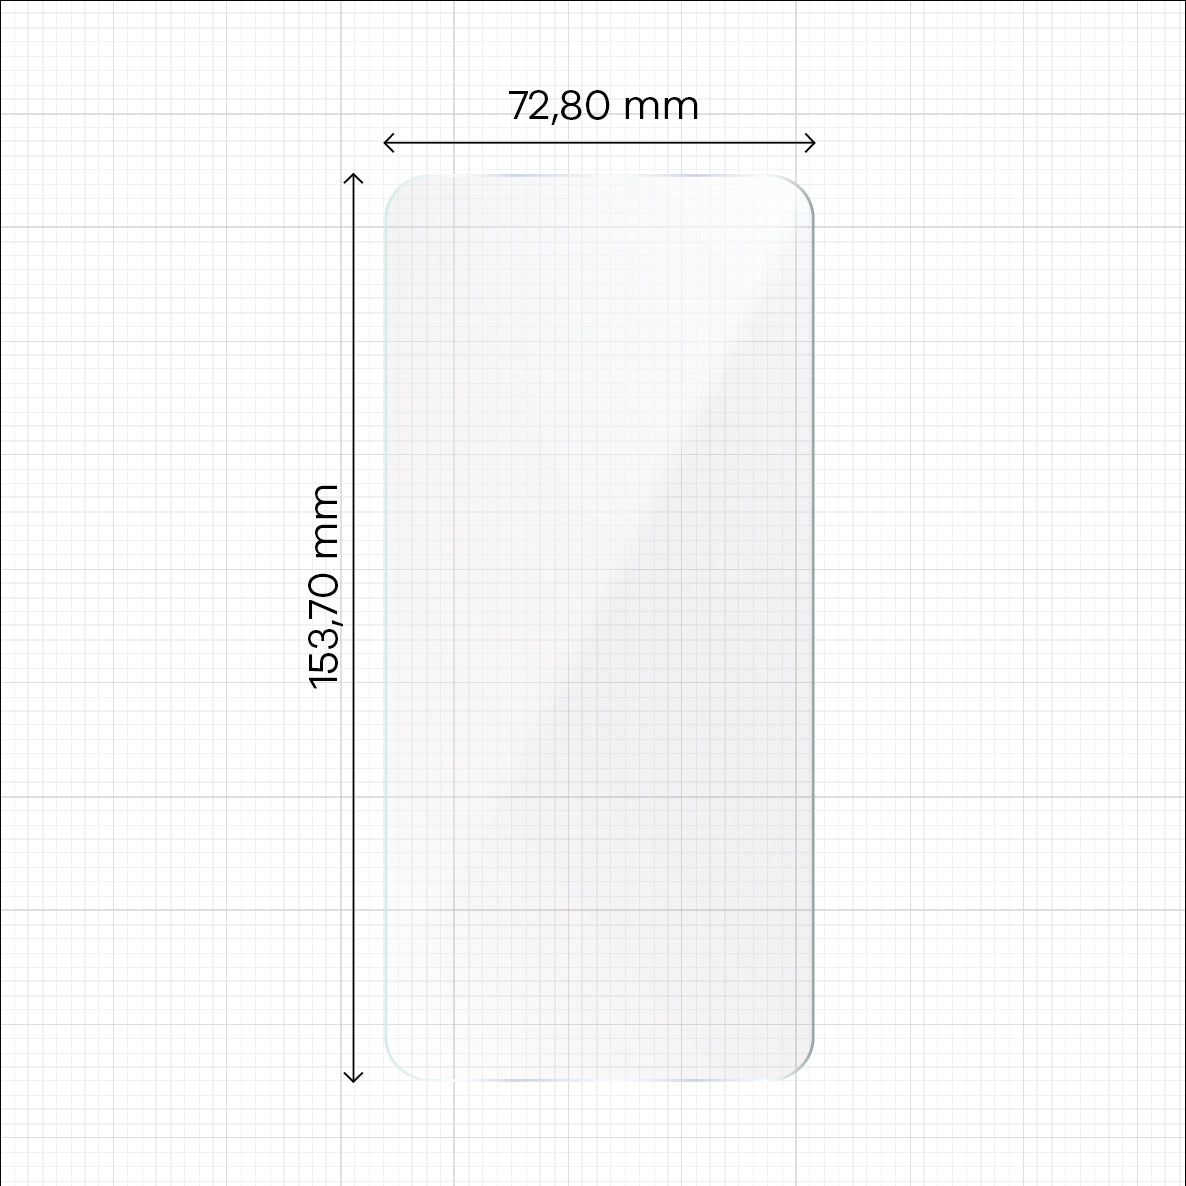 Hydrogel Folie für den Bildschirm Bizon Glass Hydrogel für Motorola Edge 40, 2 Stück